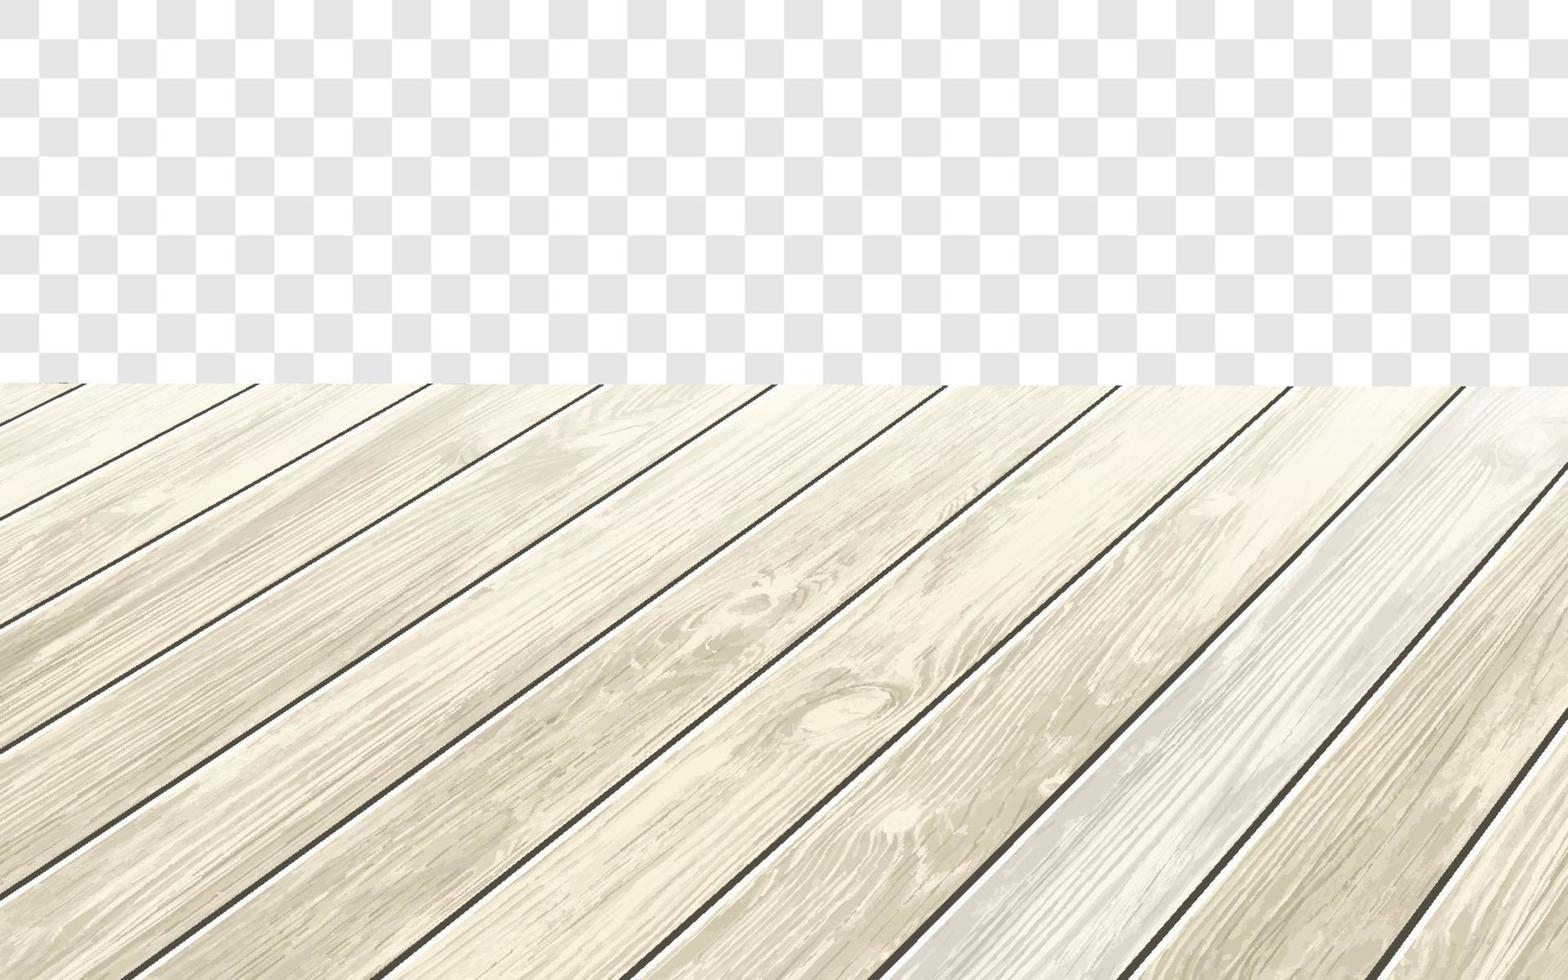 piano del tavolo in legno con superficie invecchiata, illustrazione vettoriale realistica. tavolo da pranzo vintage in legno oscurato, struttura realistica della plancia. scrivania vuota isolata sul muro bianco.